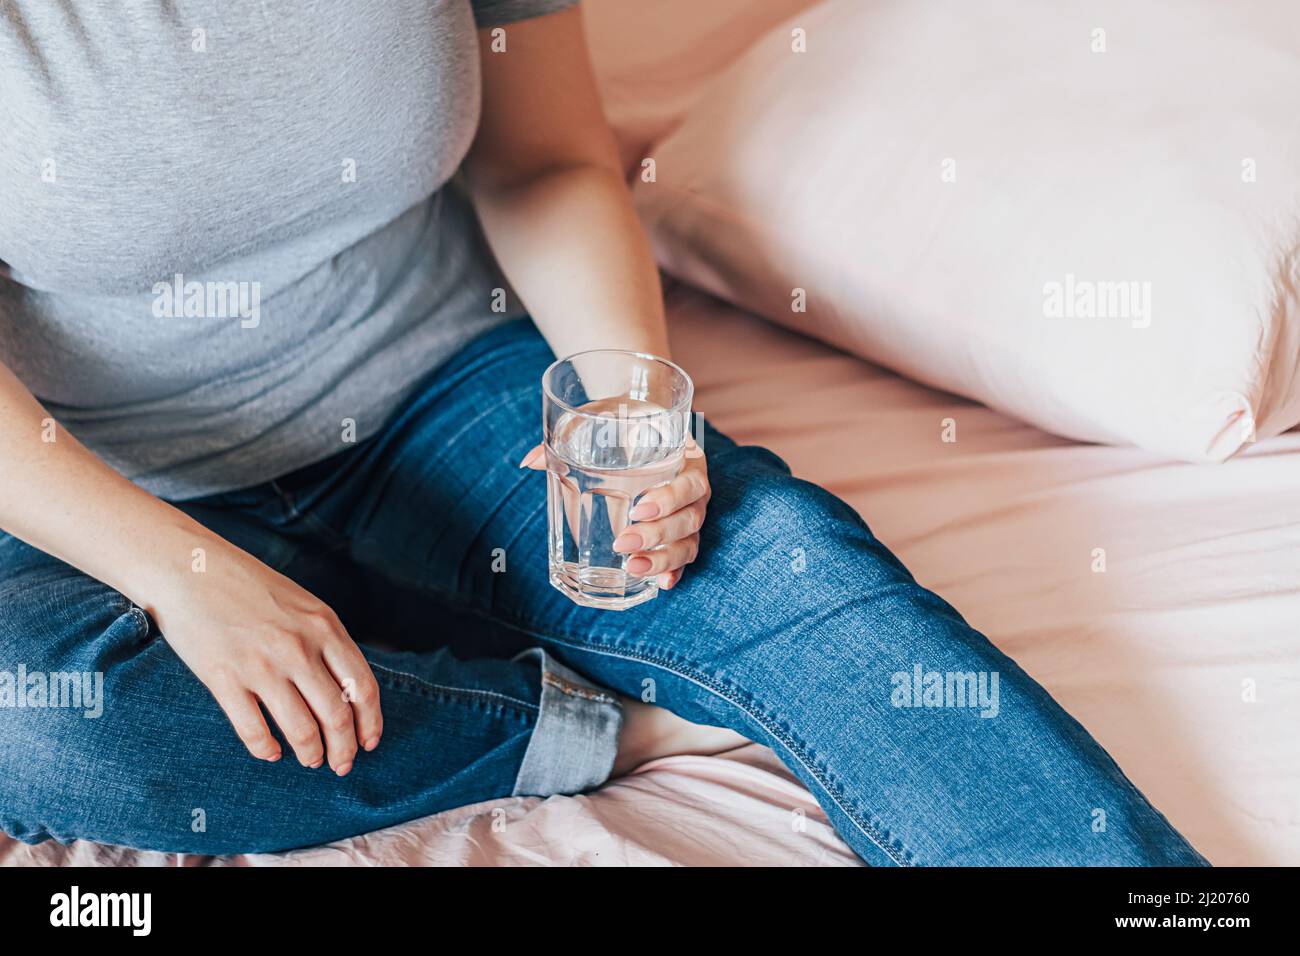 Une femme s'assoit dans son lit et tient un verre d'eau propre dans ses mains. Journée mondiale de l'eau. Concept de soins de santé. Boire de l'eau le matin pour stimuler le métabolisme. Banque D'Images